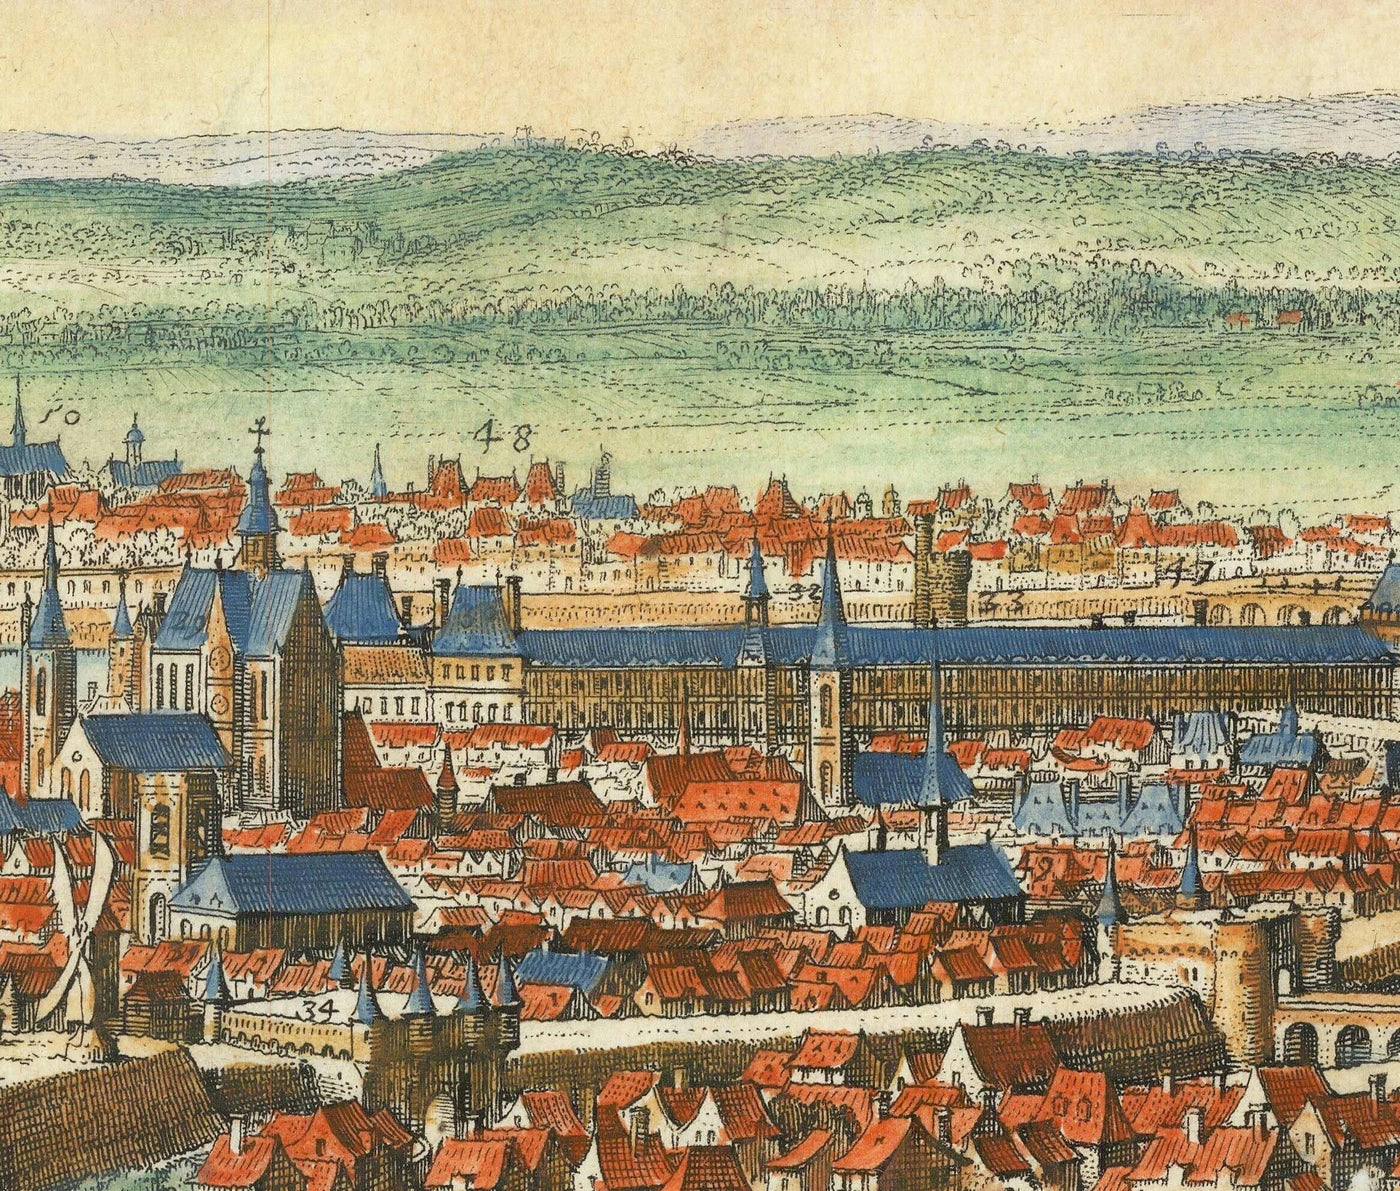 Seltene alte Karte von Paris, Frankreich von Matthaus Merian im Jahre 1648 - Notre Dame, Sainte-Chapelle, Krankenhaus St. Louis, Bastille